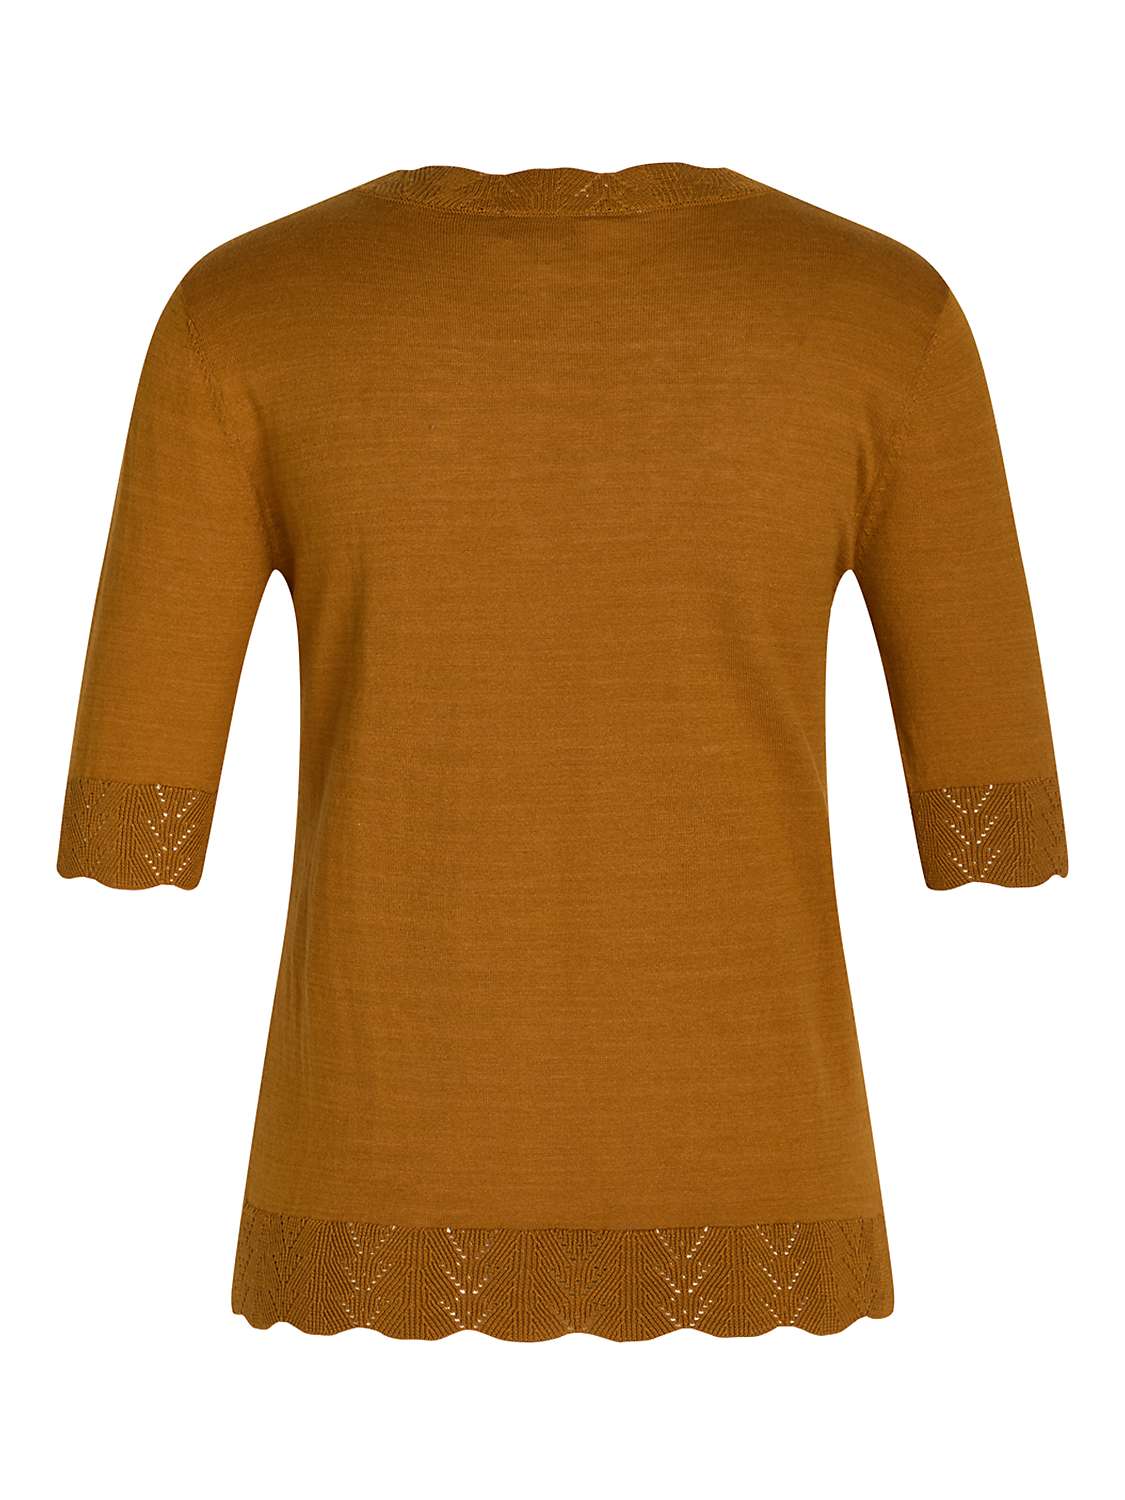 Buy Noa Noa Louisa Short Sleeve Top, Spice Online at johnlewis.com